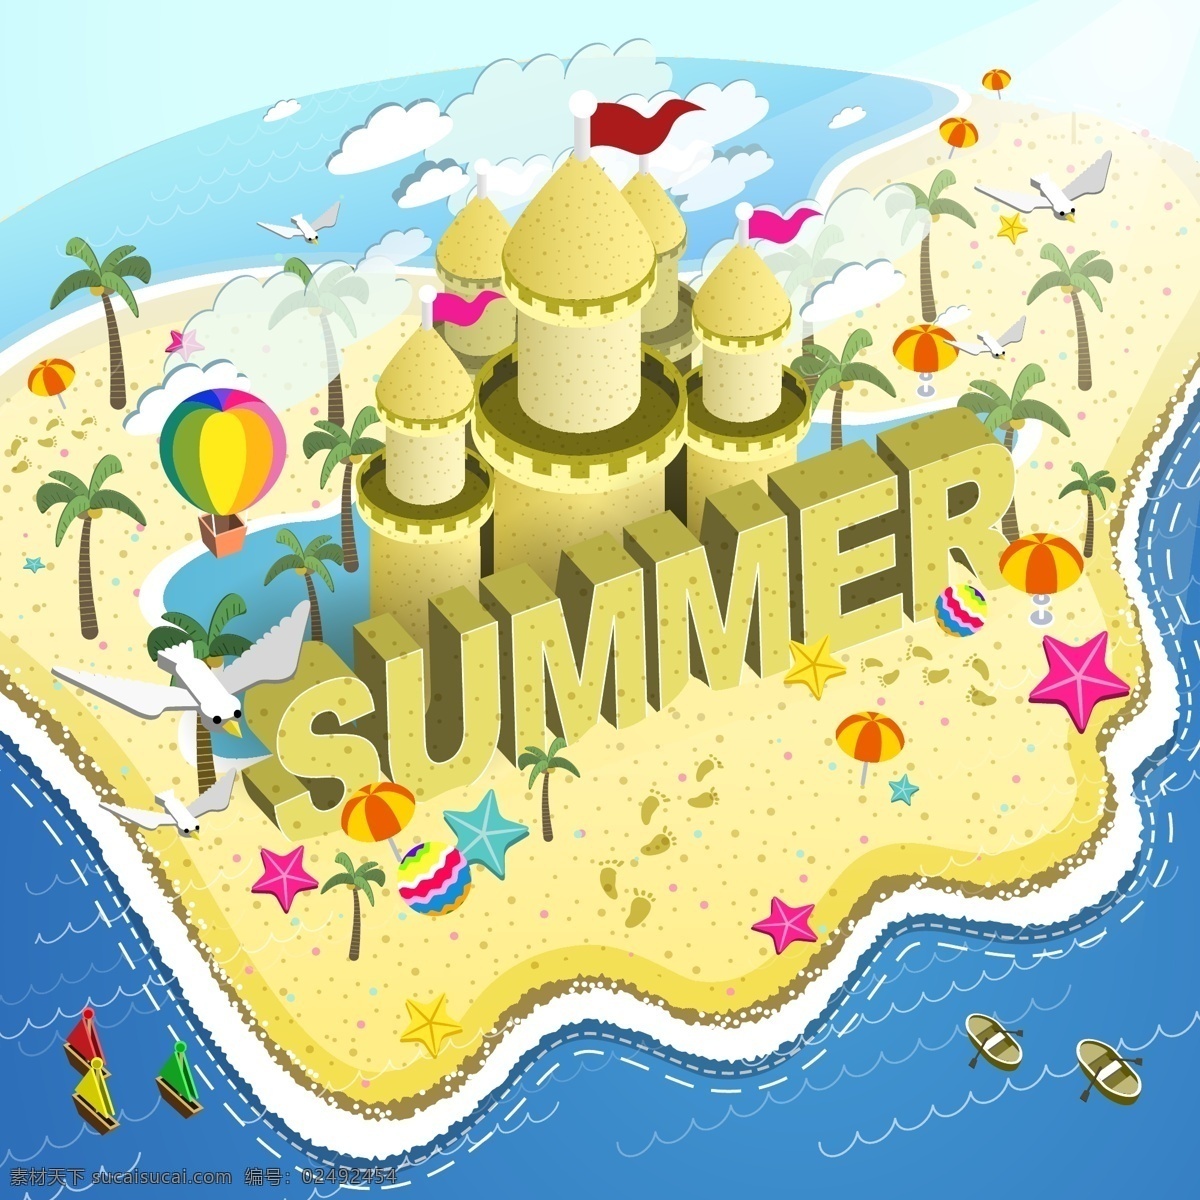 夏天 沙滩 插画 场景 蓝天 白云 城堡 大海 海星